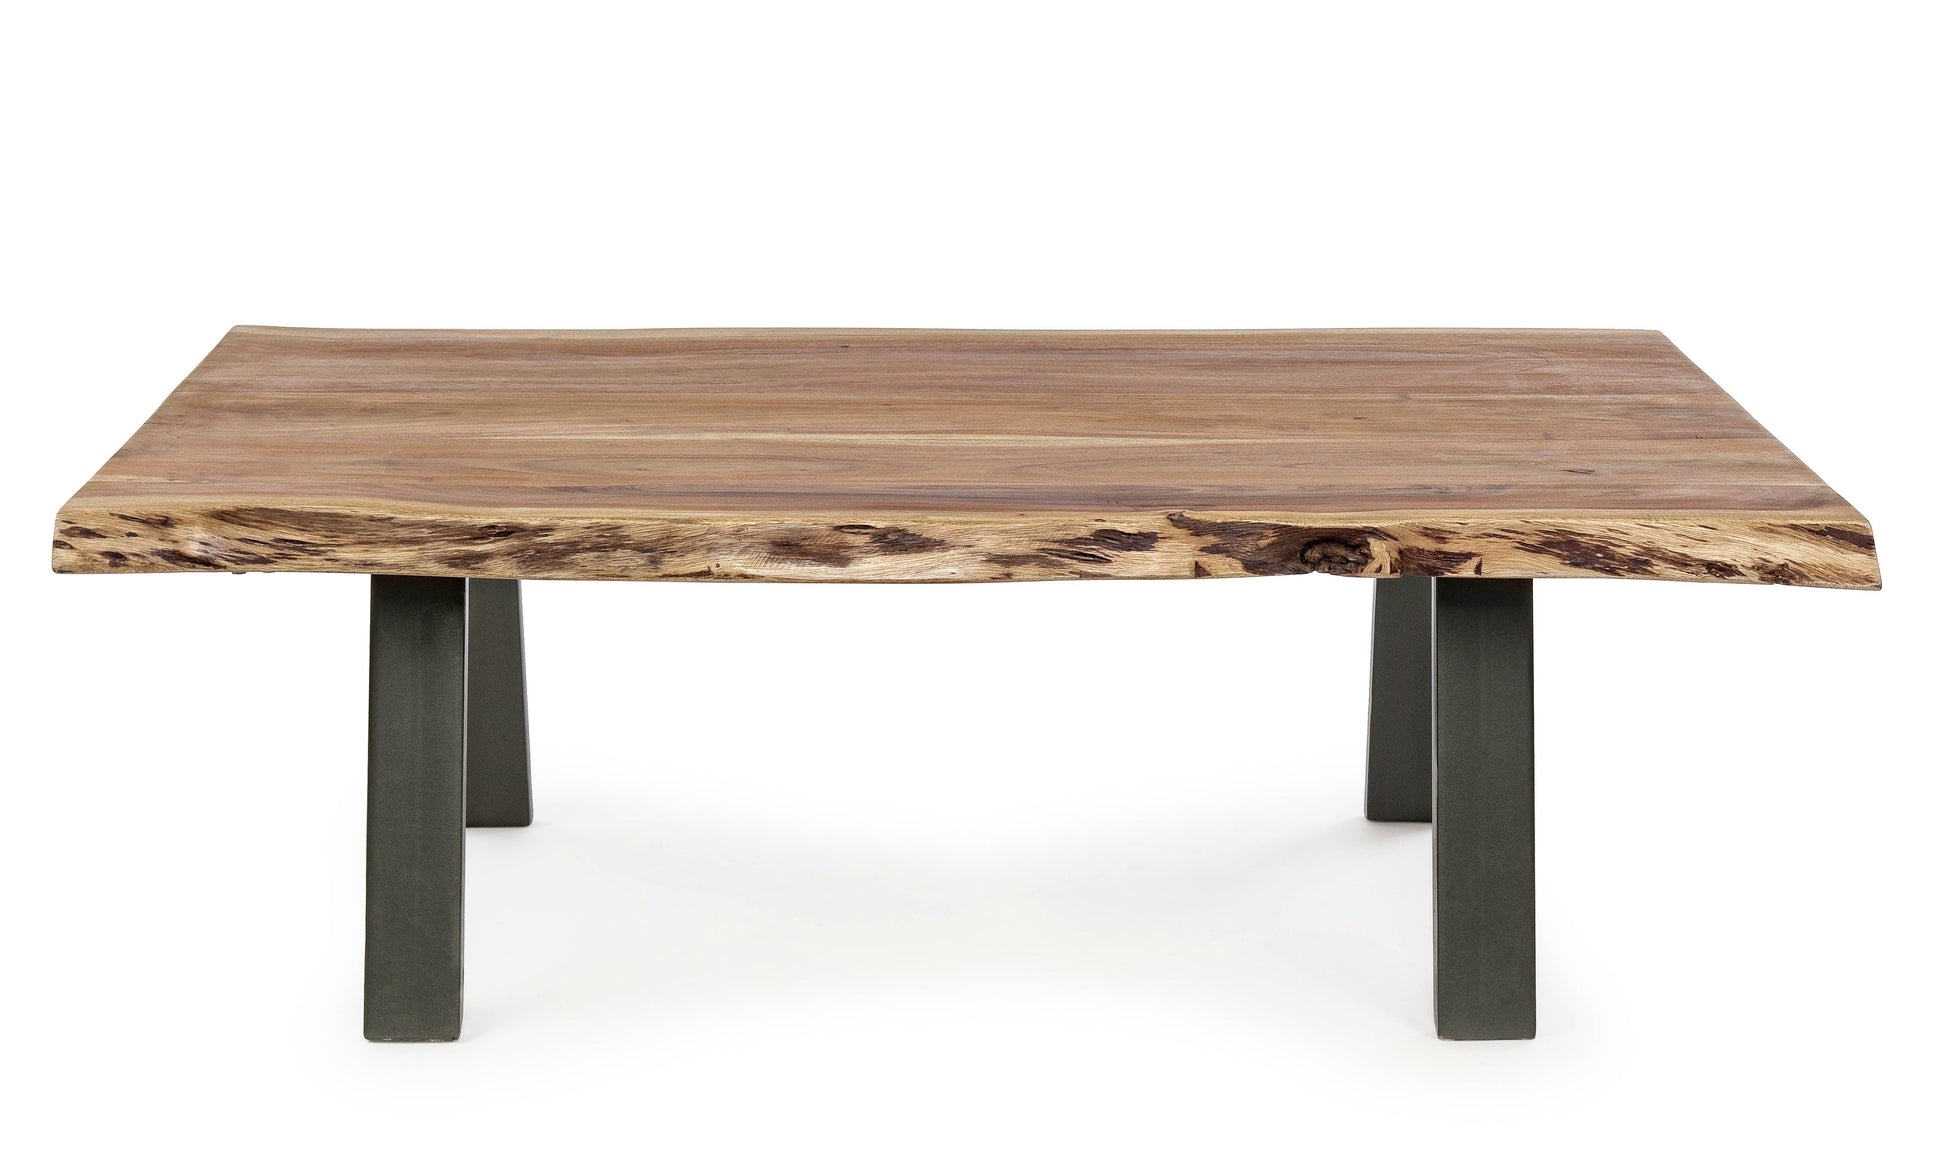 Tavolino industrial in legno massello con bordi irregolari effetto legno vivo 115x65 - 115X65 - lapagoda.net